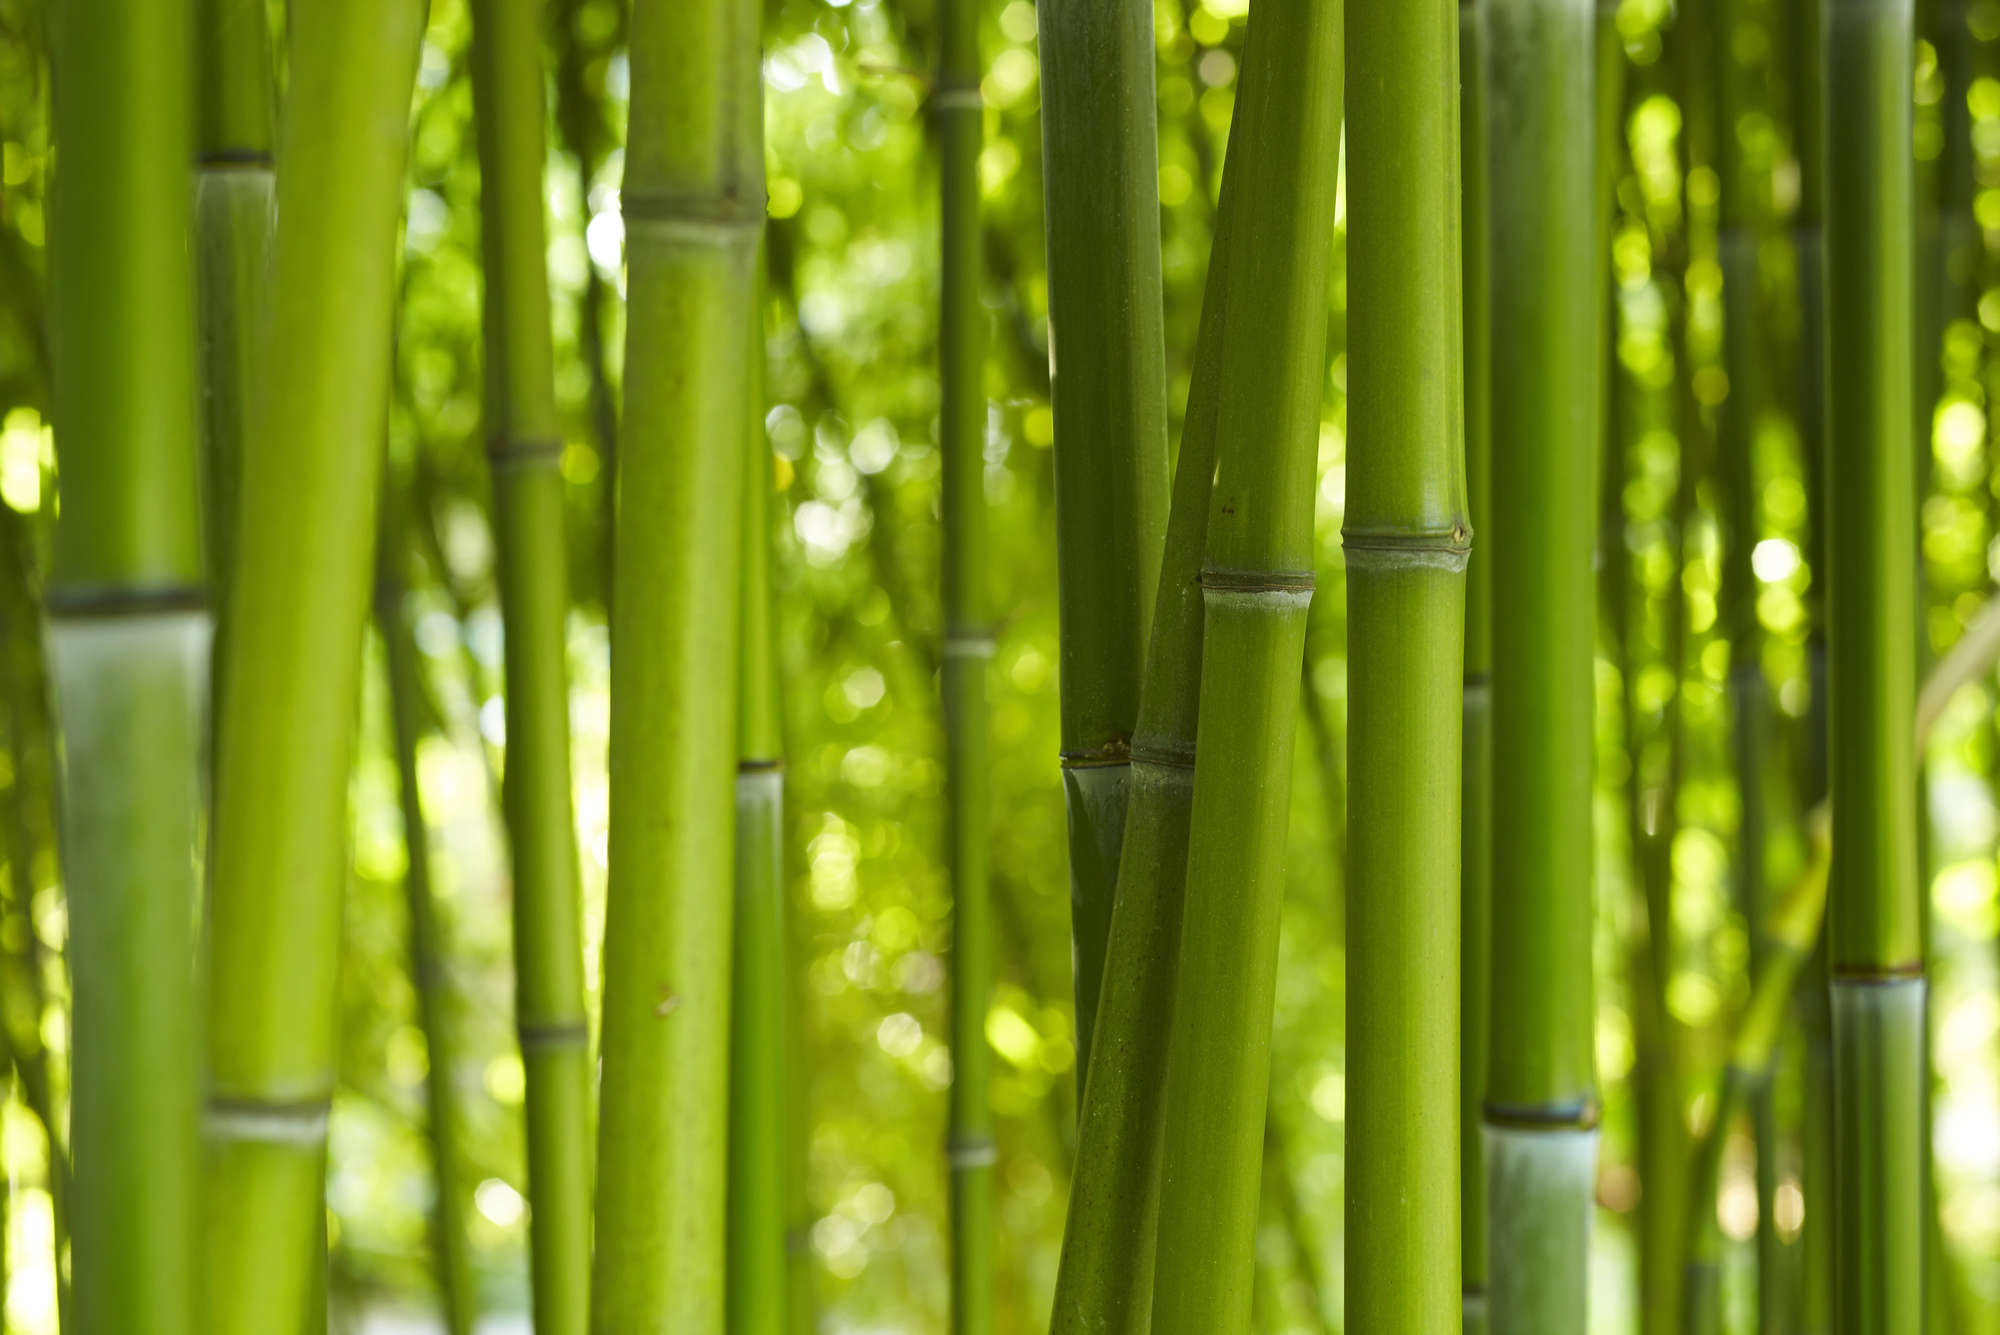             papiers peints à impression numérique bambou en vert - intissé structuré
        